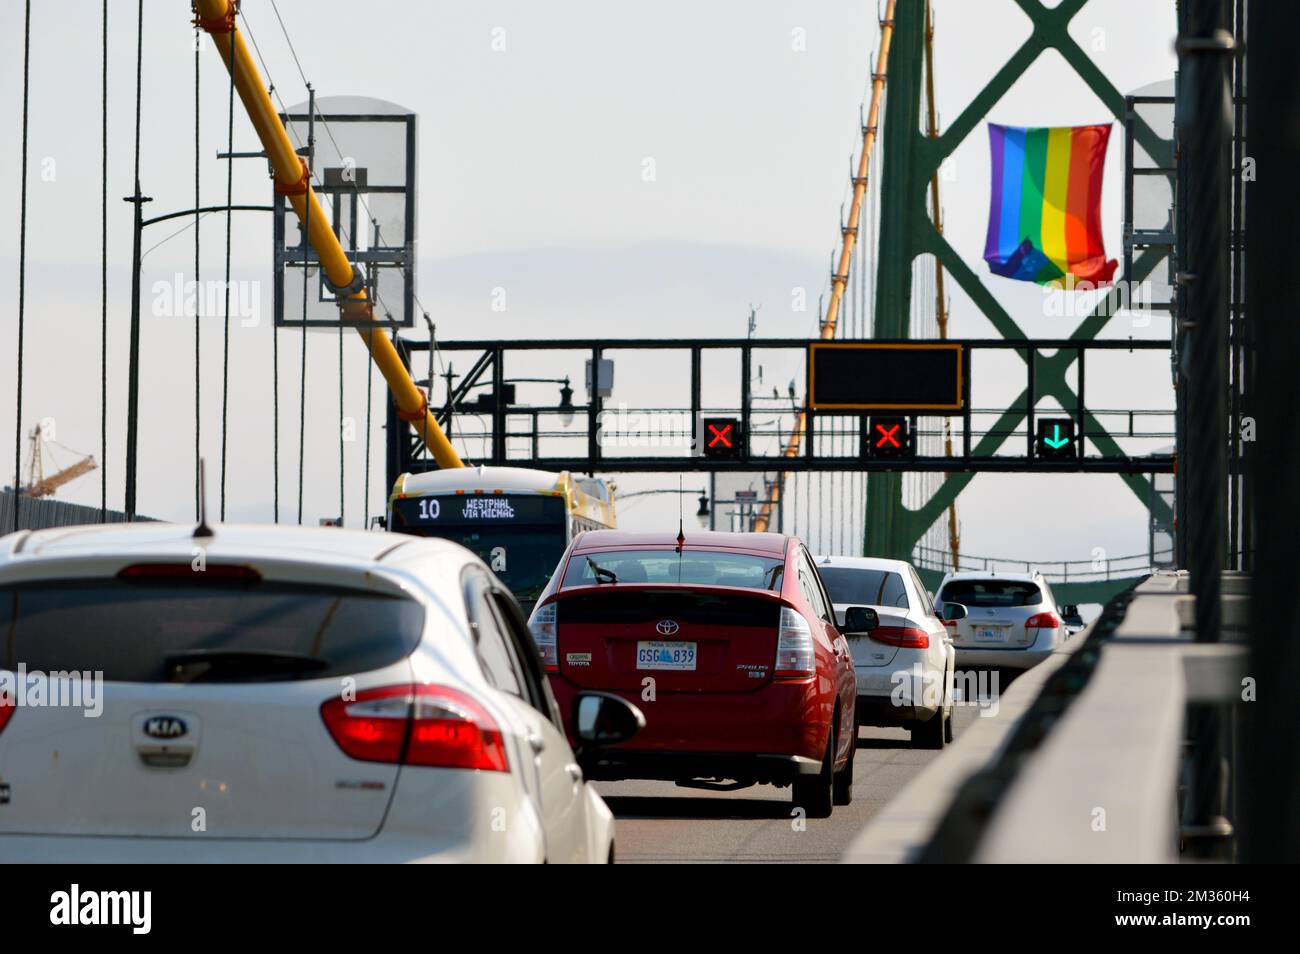 Autos auf der Angus L. Macdonald Bridge in Halifax, Nova Scotia, Kanada, mit der LGBT Pride Flag, die von einem der Brückentürme hängt. Stockfoto